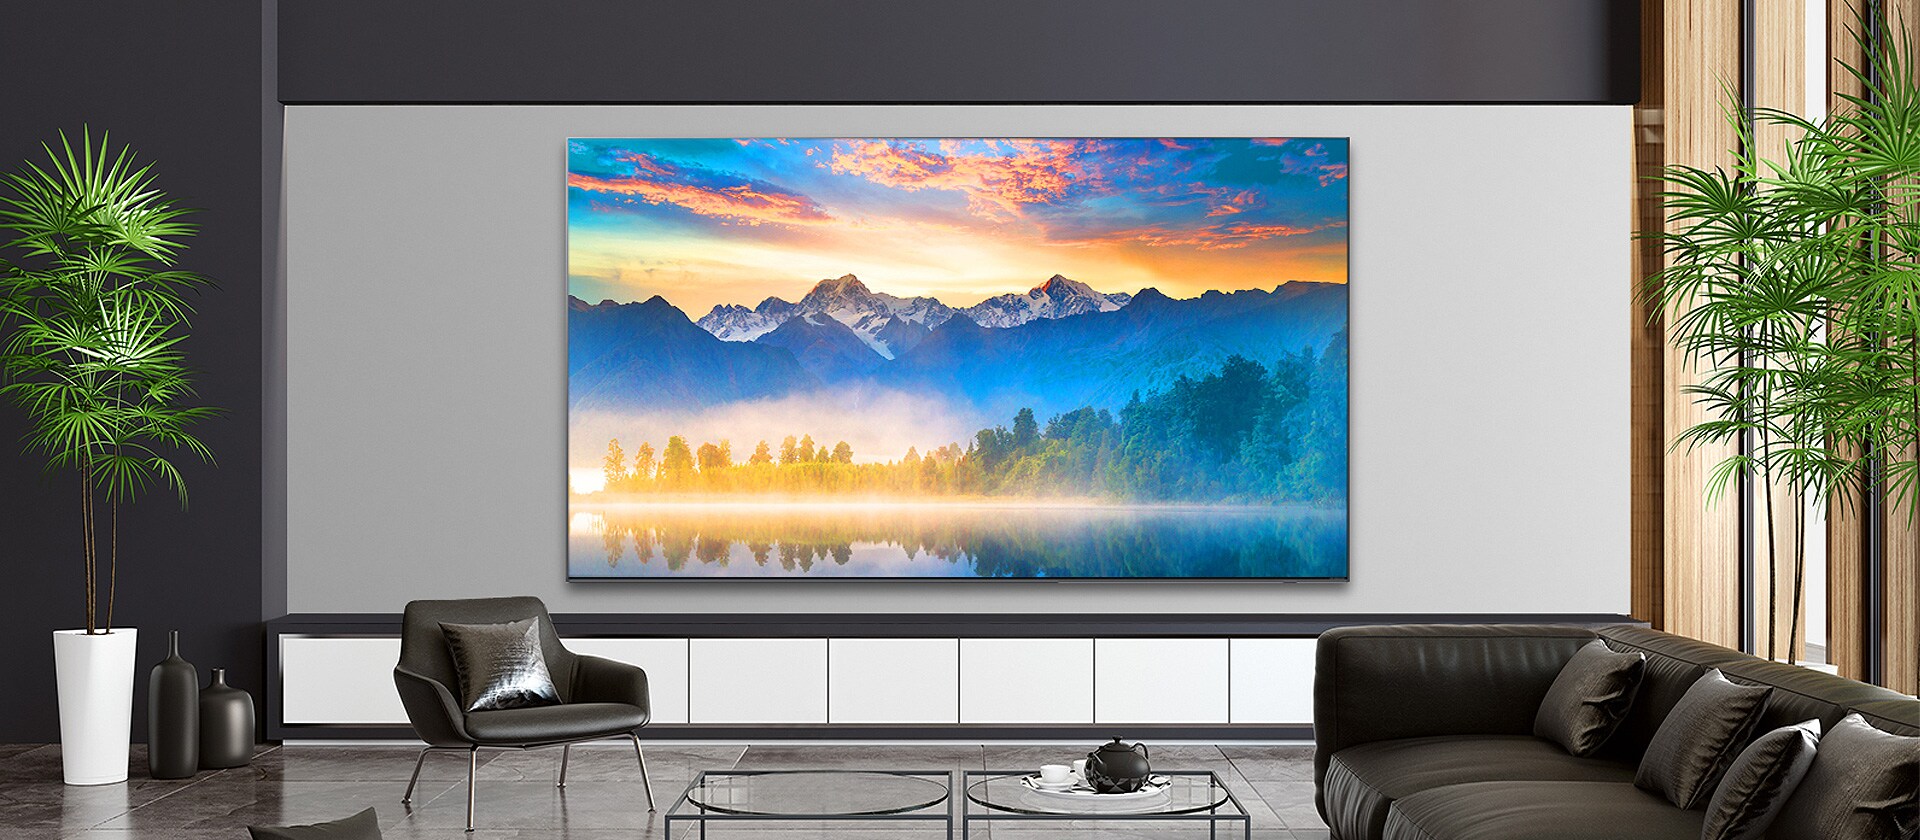 Un salón con un televisor colgado en la pared muestra un escenario natural.